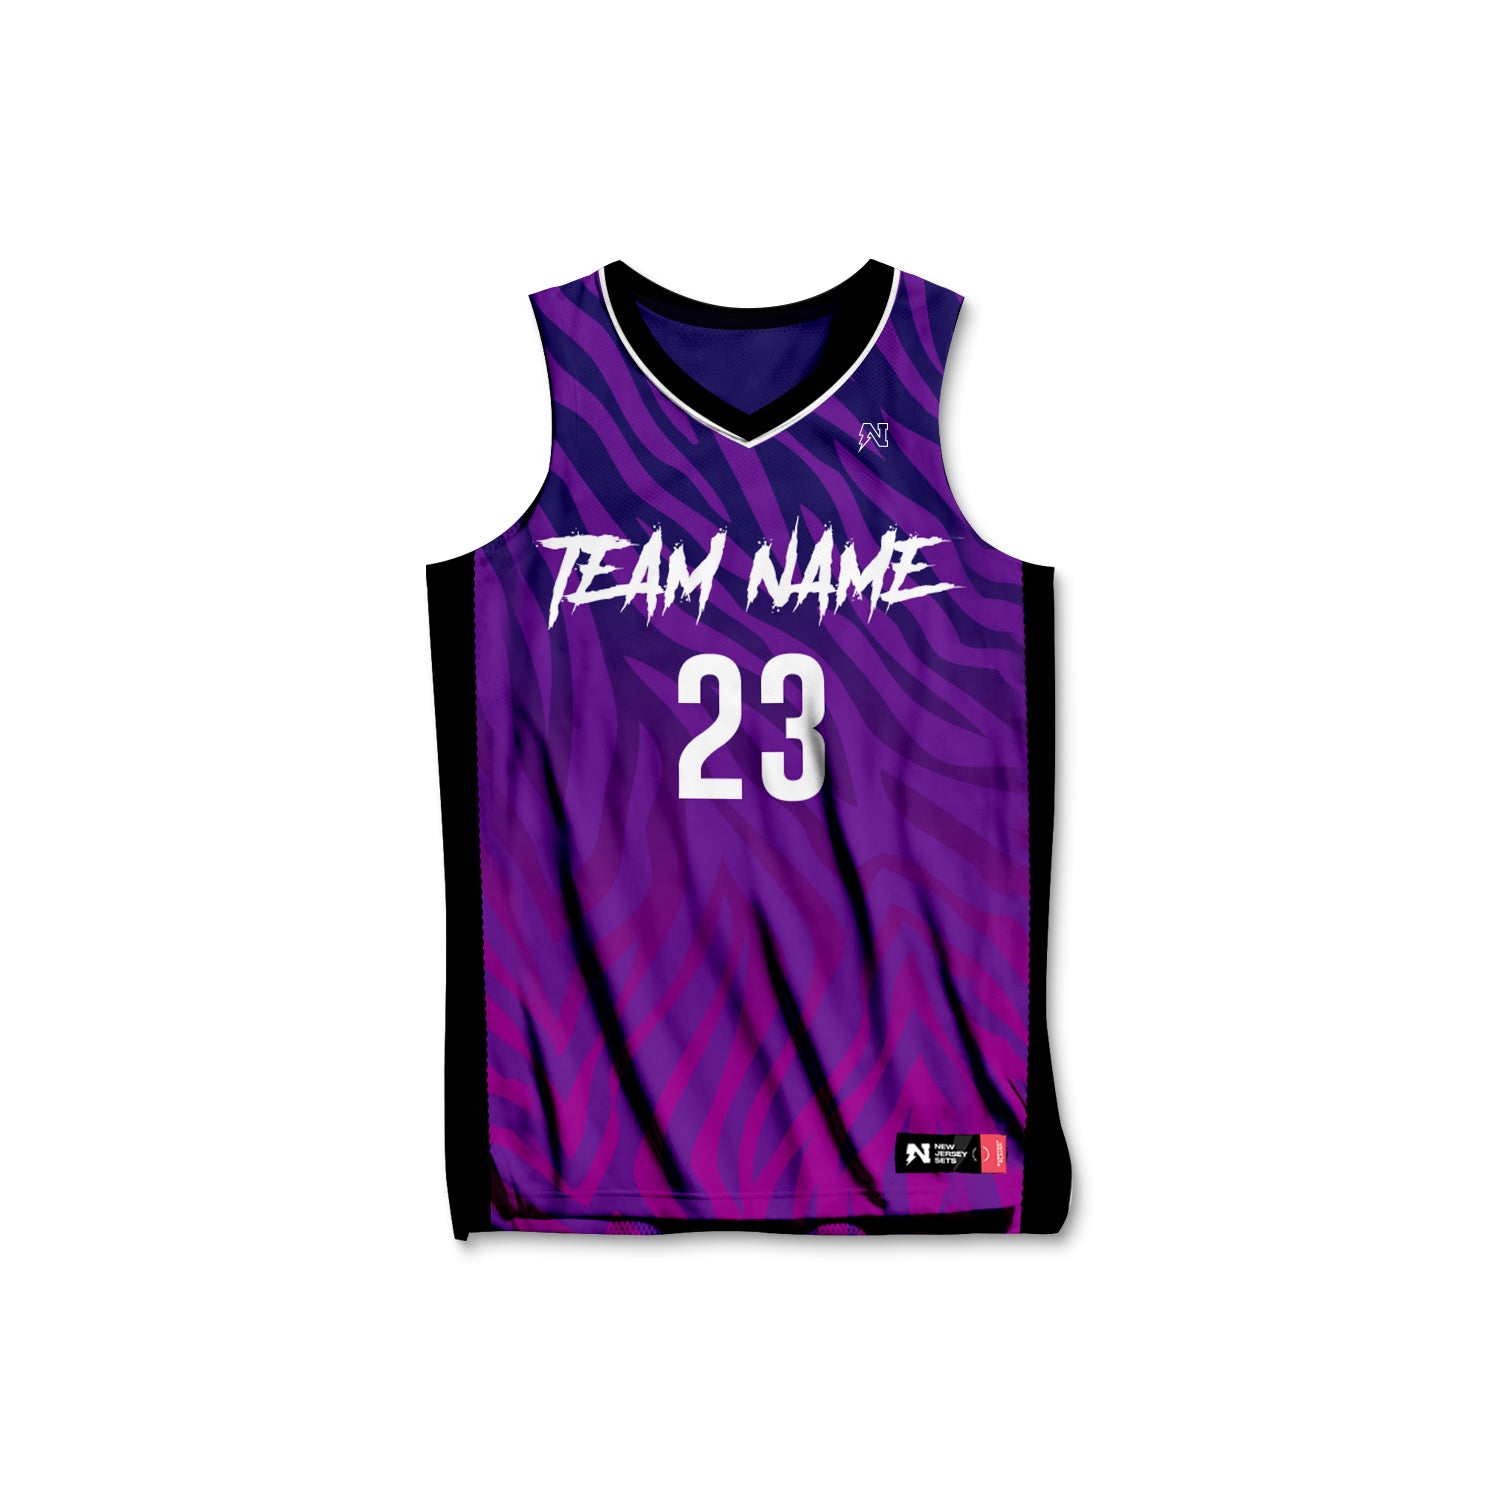 Custom Basketball Jersey, Personalized Basketball Jersey, Customized Jersey  Name and Number 